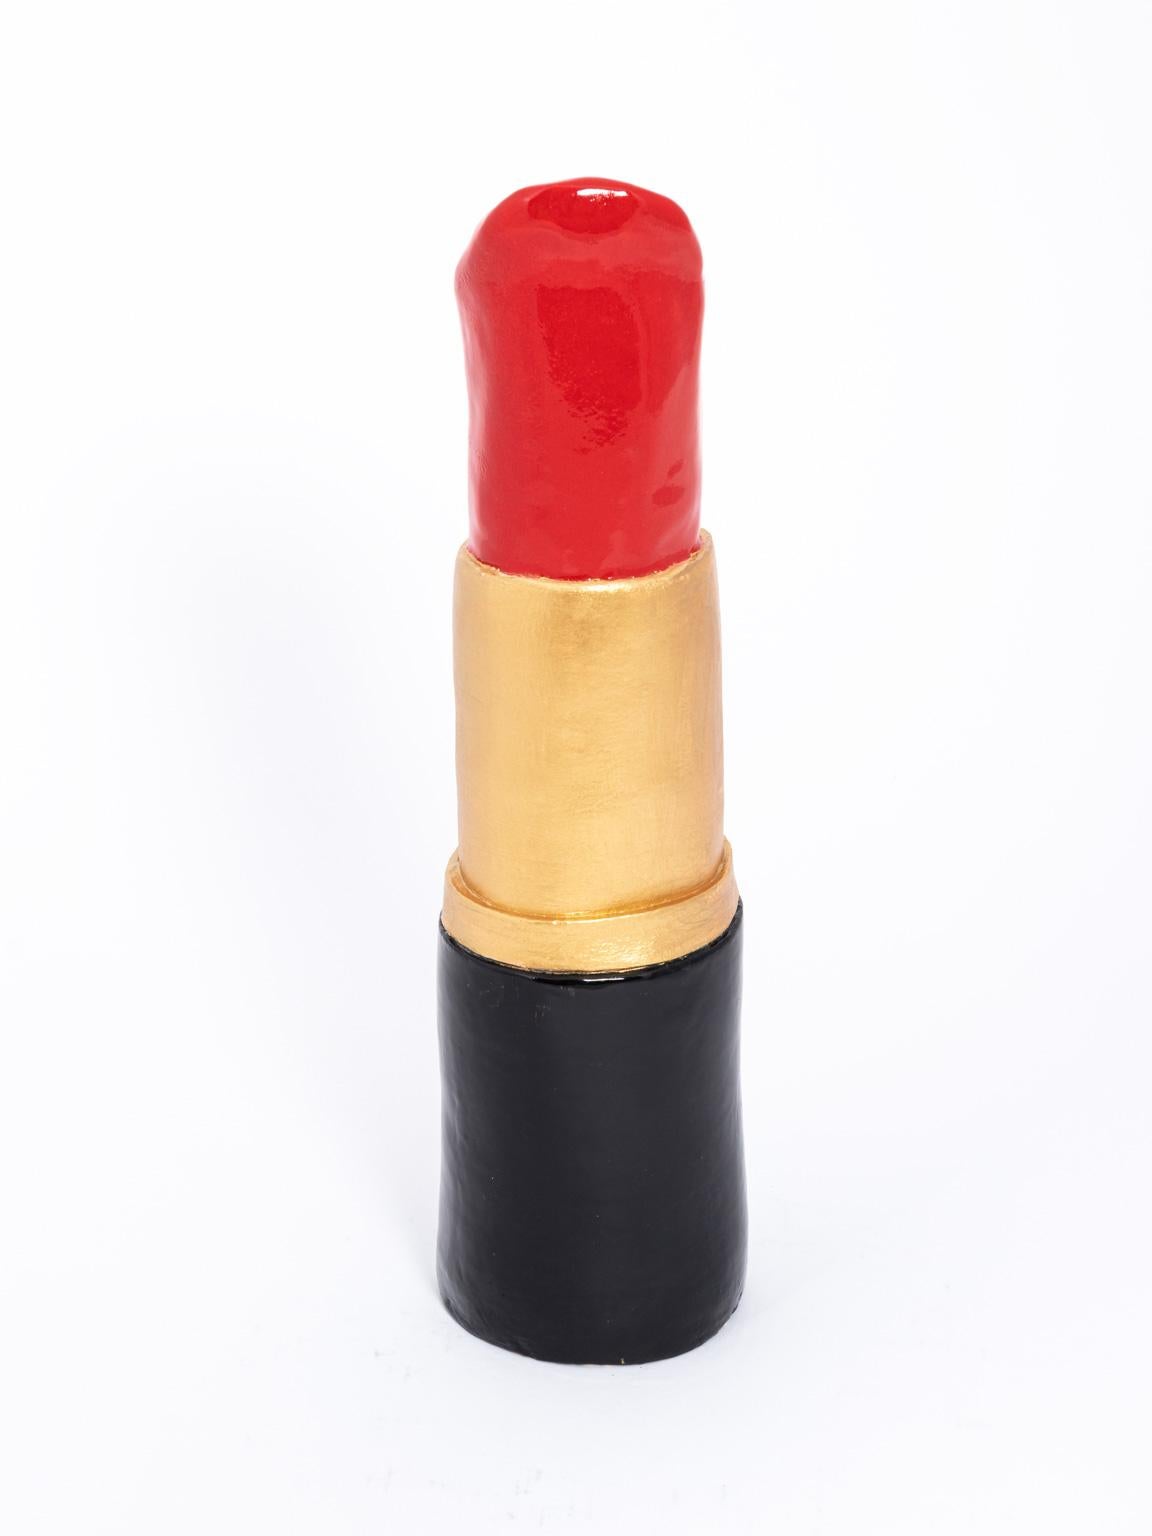 Contemporary Hand Built Ceramic Lipstick 1